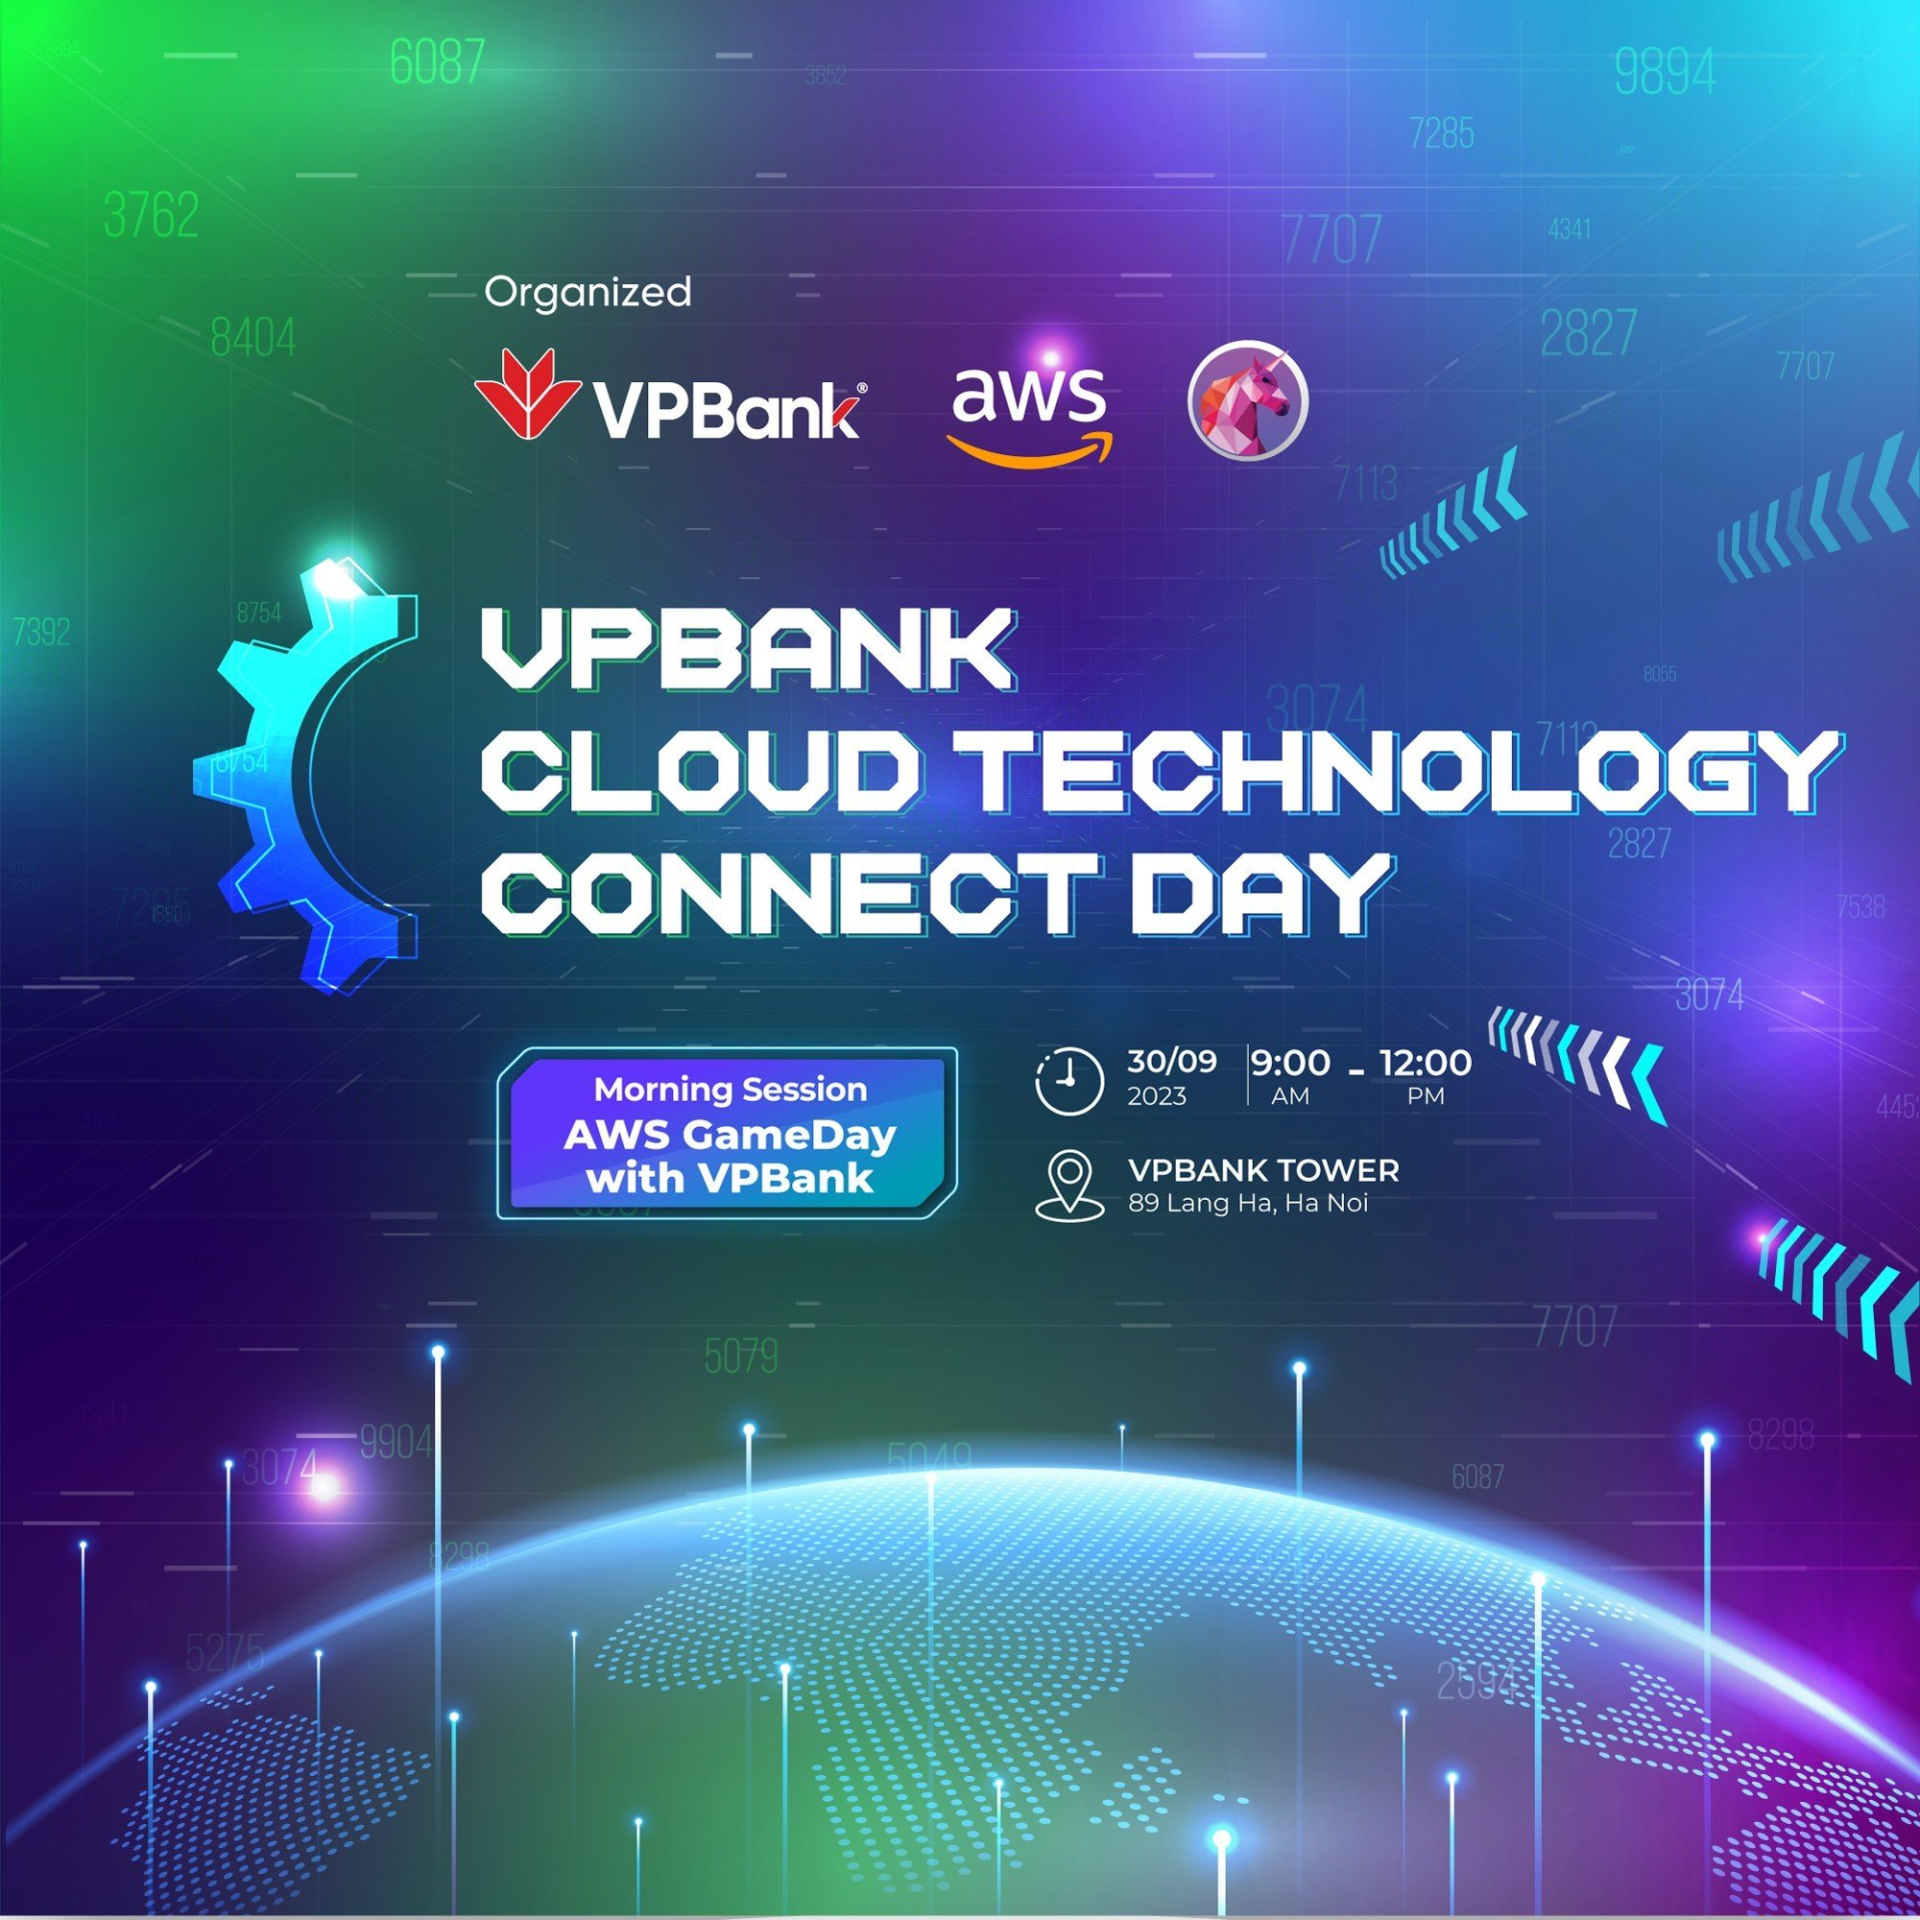 VPBank Cloud Technology Connect Day- sự kiện được các chuyên gia công nghệ trong lĩnh vực tài chính ngân hàng mong đợi